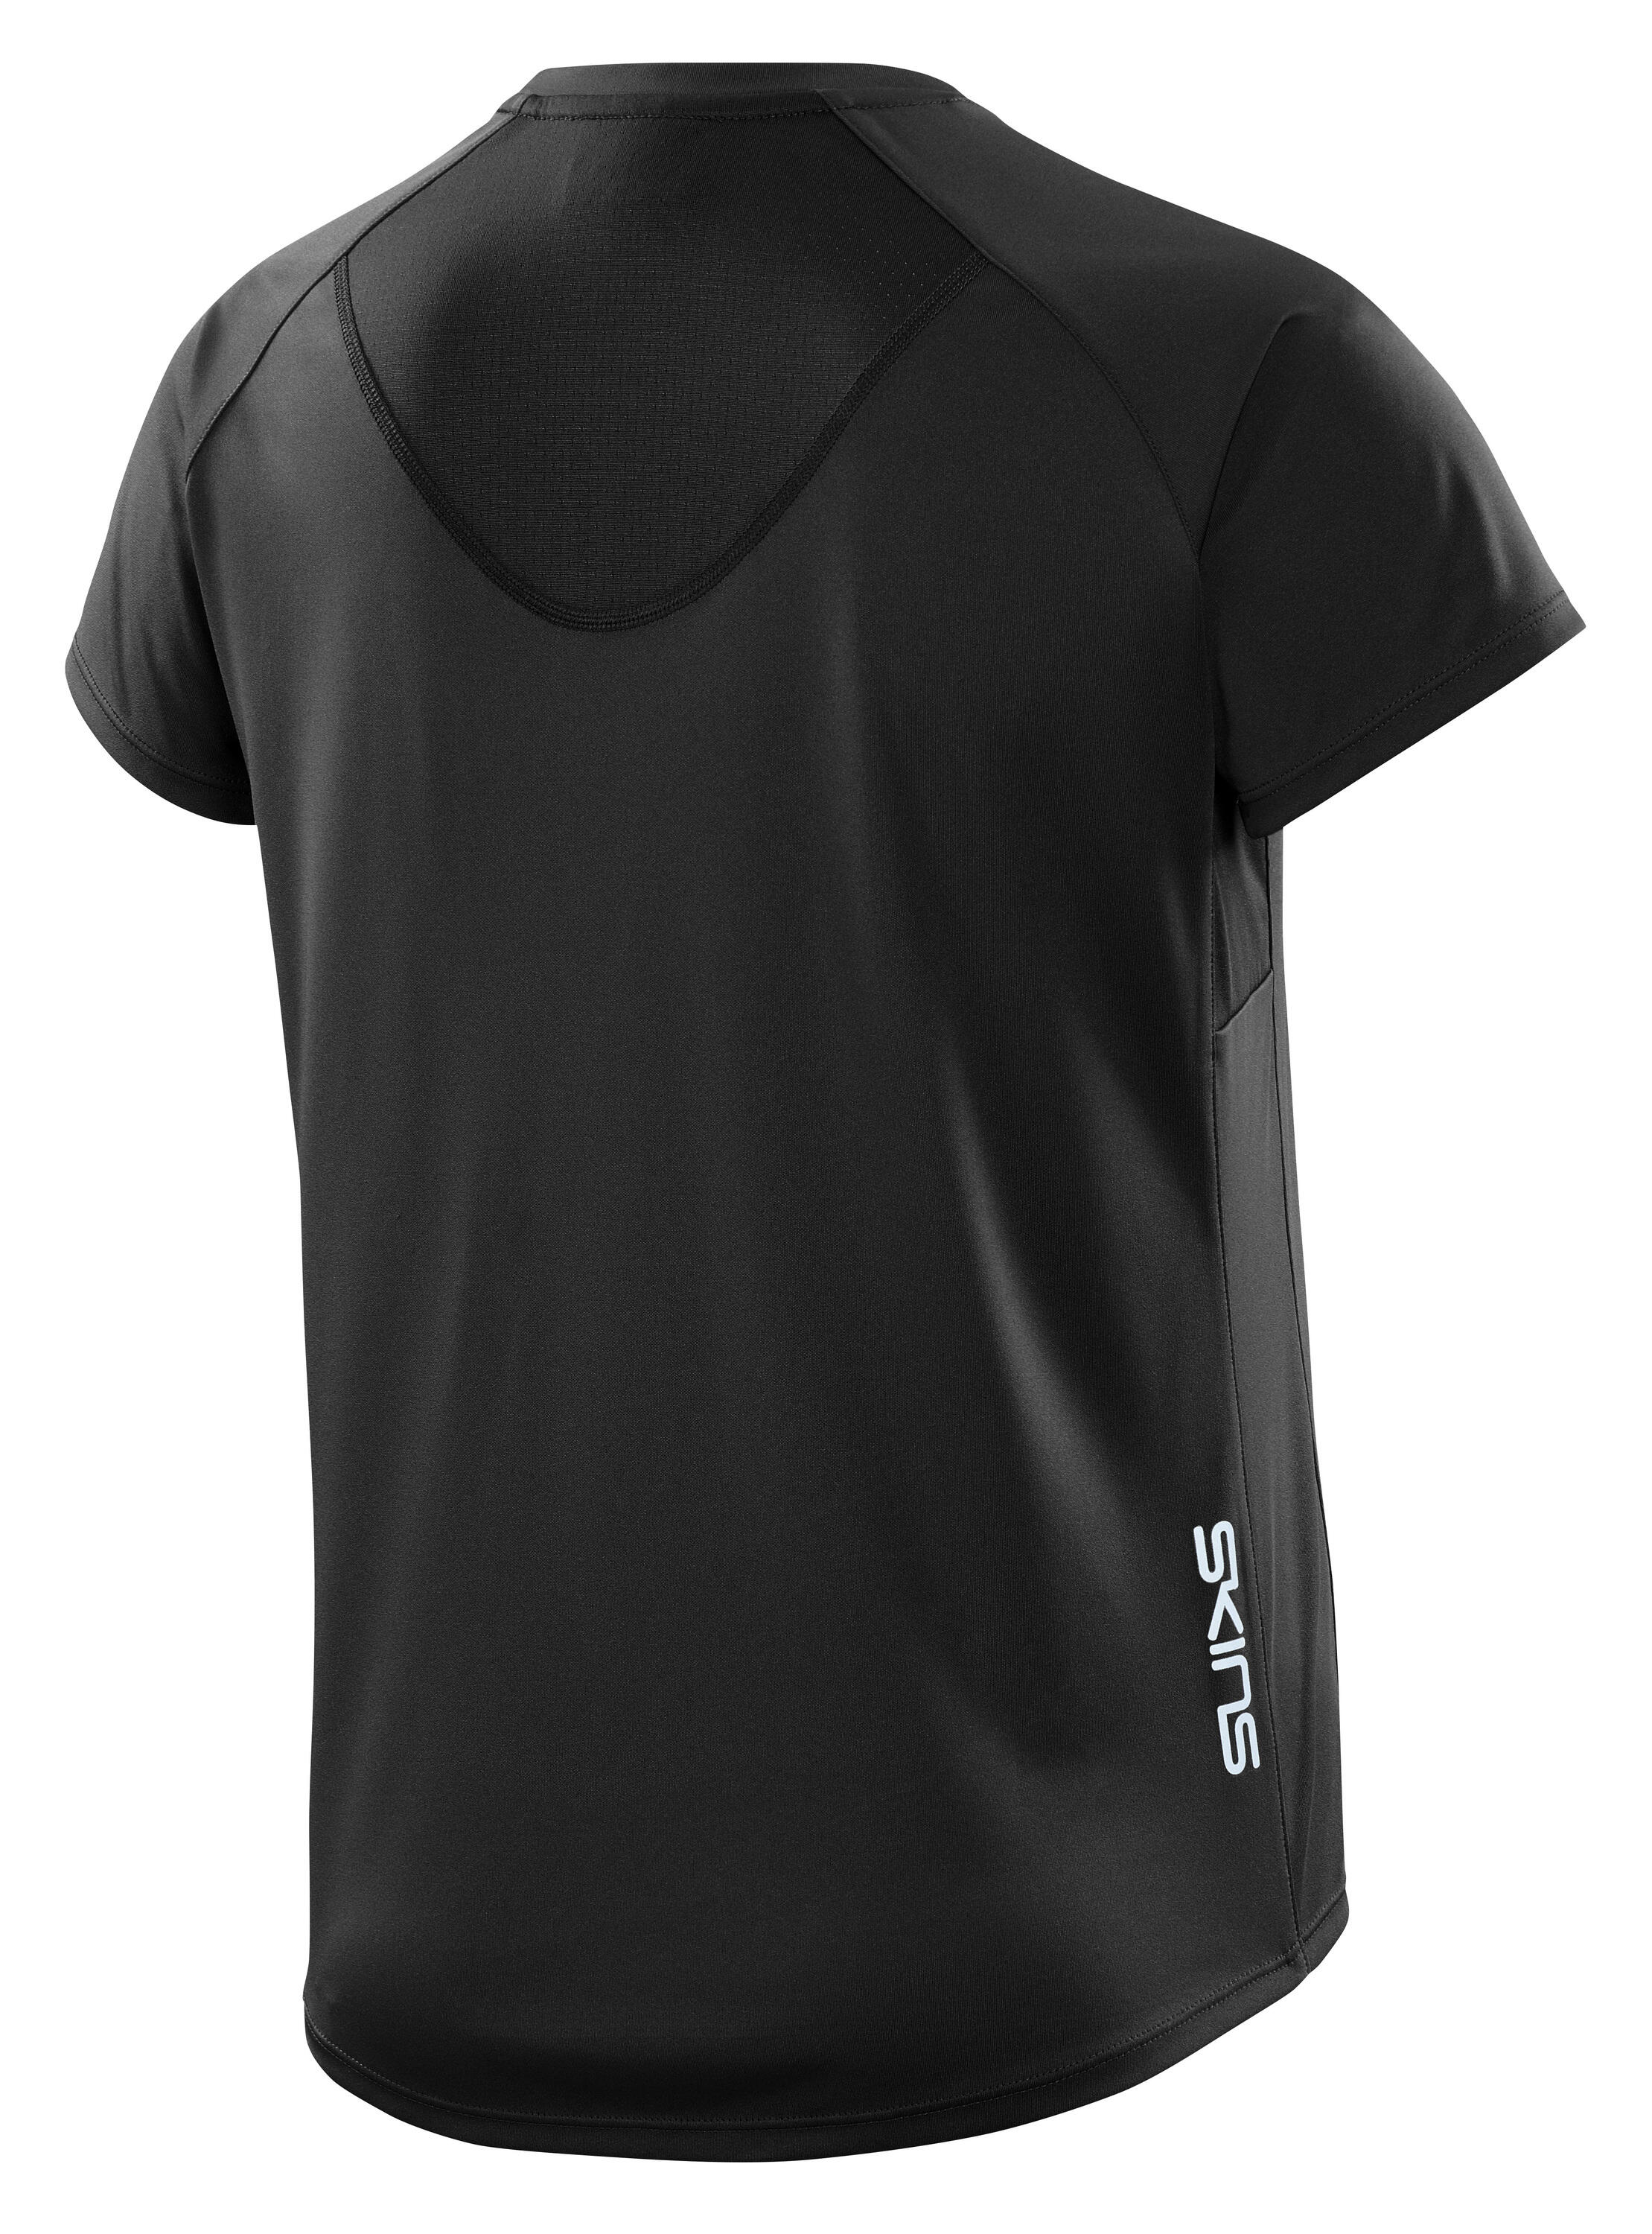 SKINS Series-3 Womens Short Sleeve Top - Black 2/5